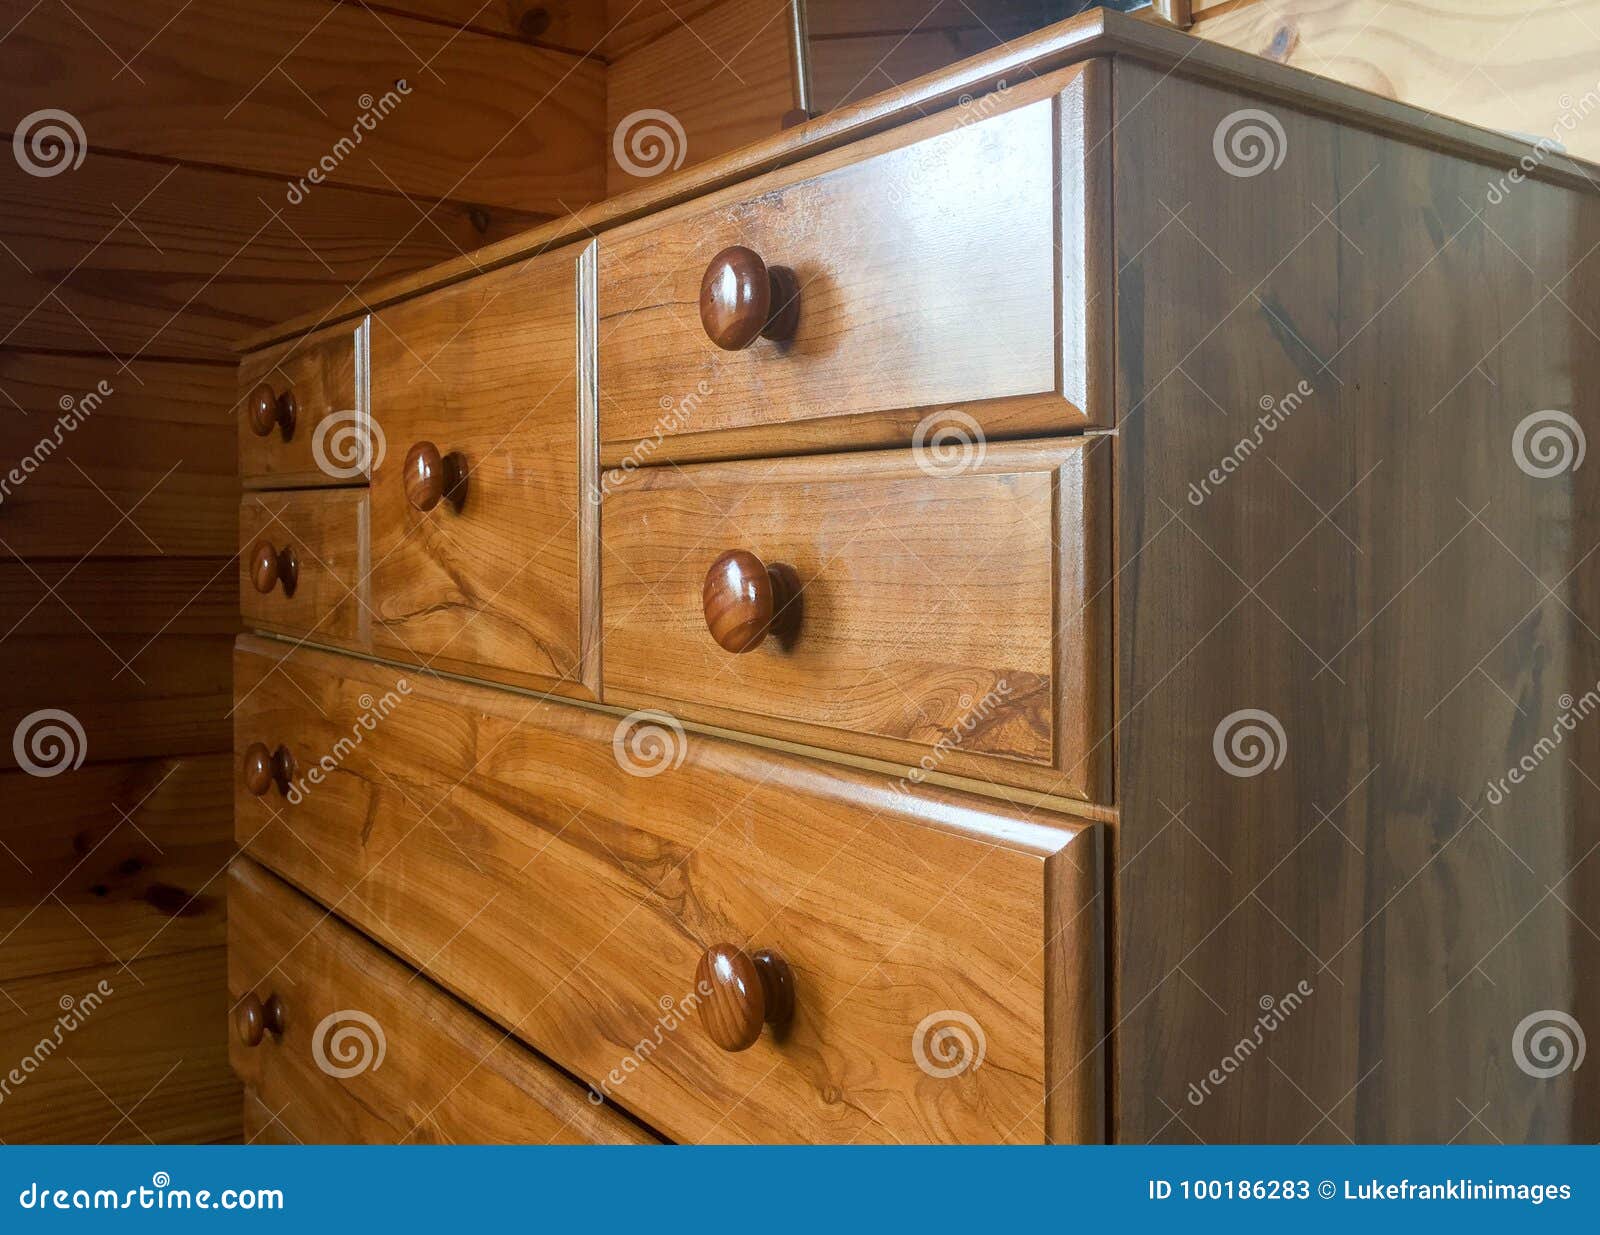 wooden tall boy dresser